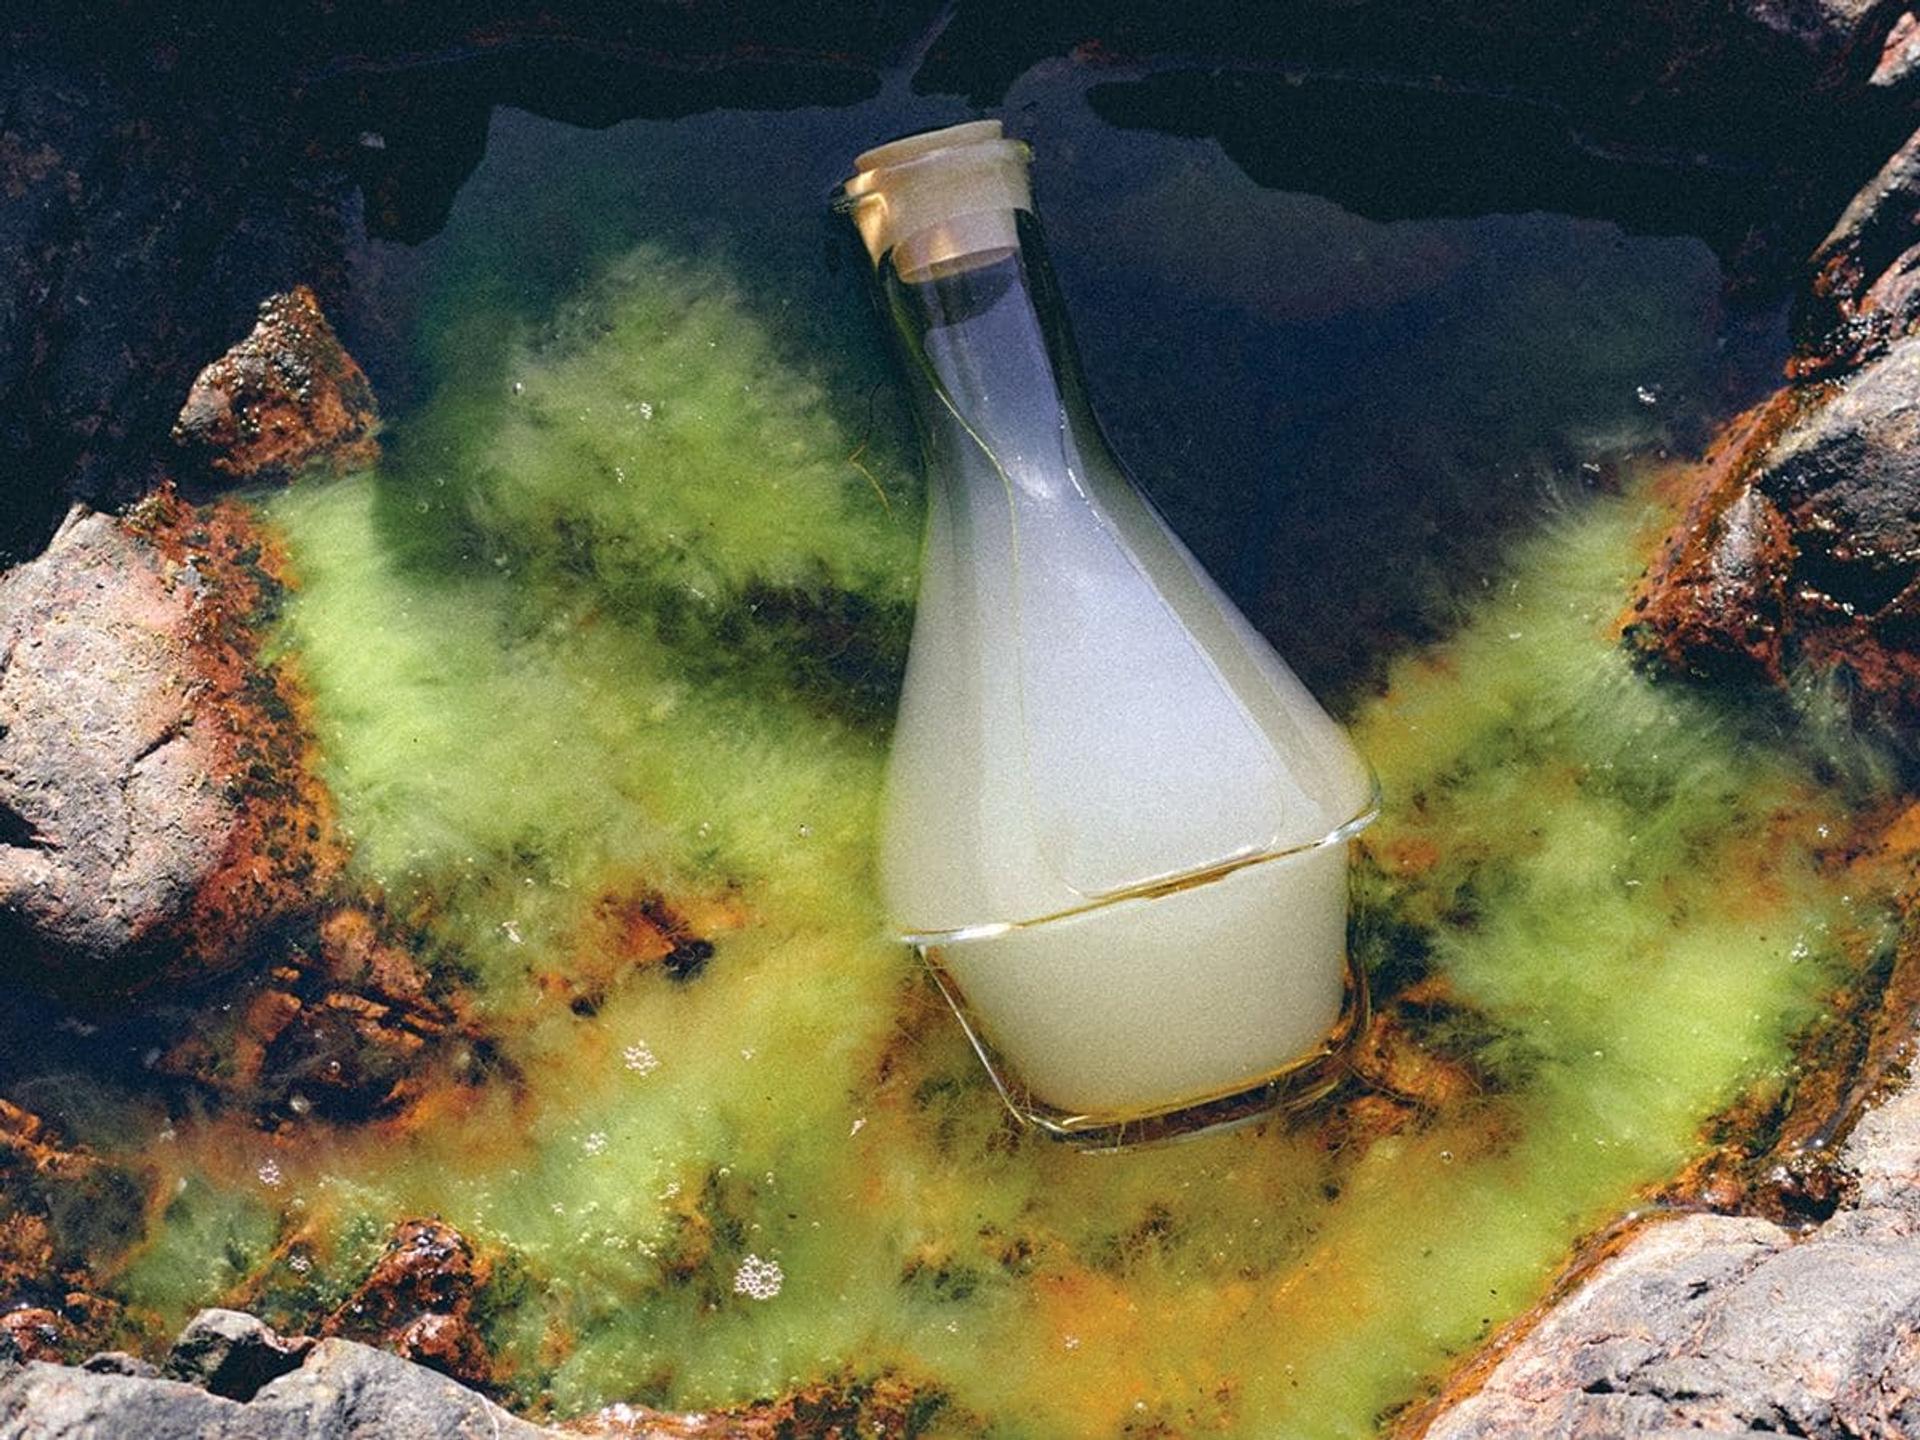 Bottle of Harklinikken Extract in sea water amongst rock pool